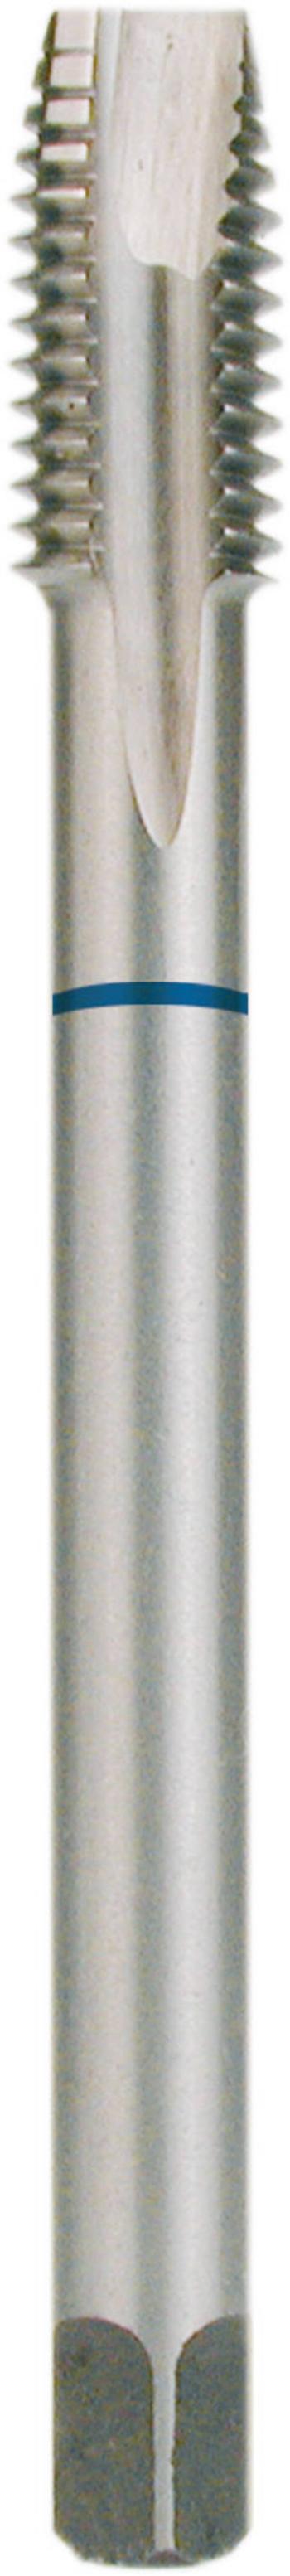 RUKO 232100 strojný závitník 1 ks  metrický M10 x 1.50 1.50 mm pravotočivý DIN 371 HSS forma B 1 ks